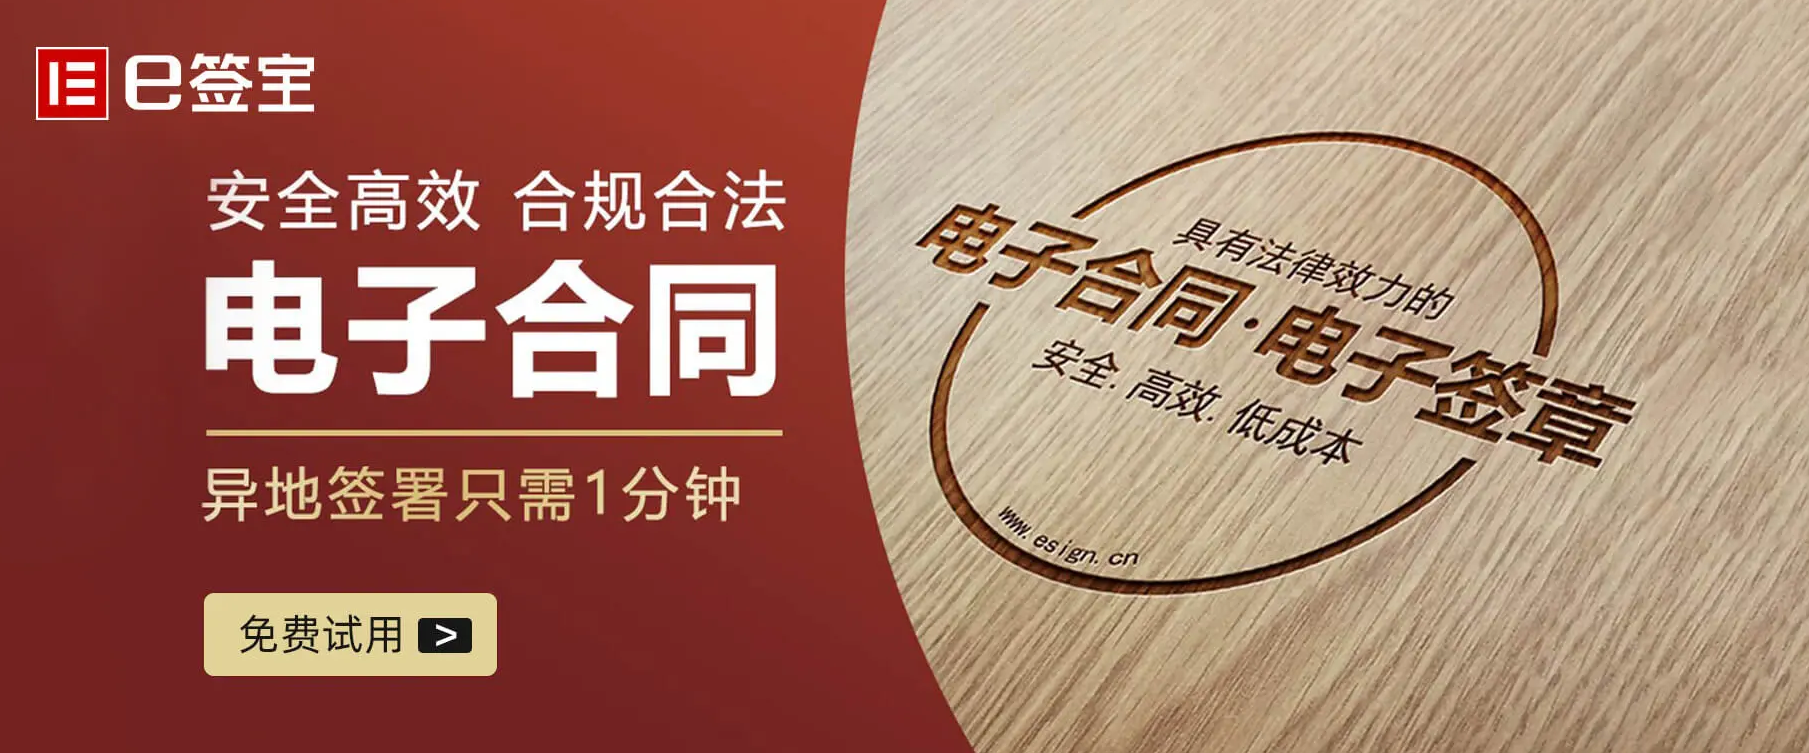 上海中小企业可免费申领电子合同